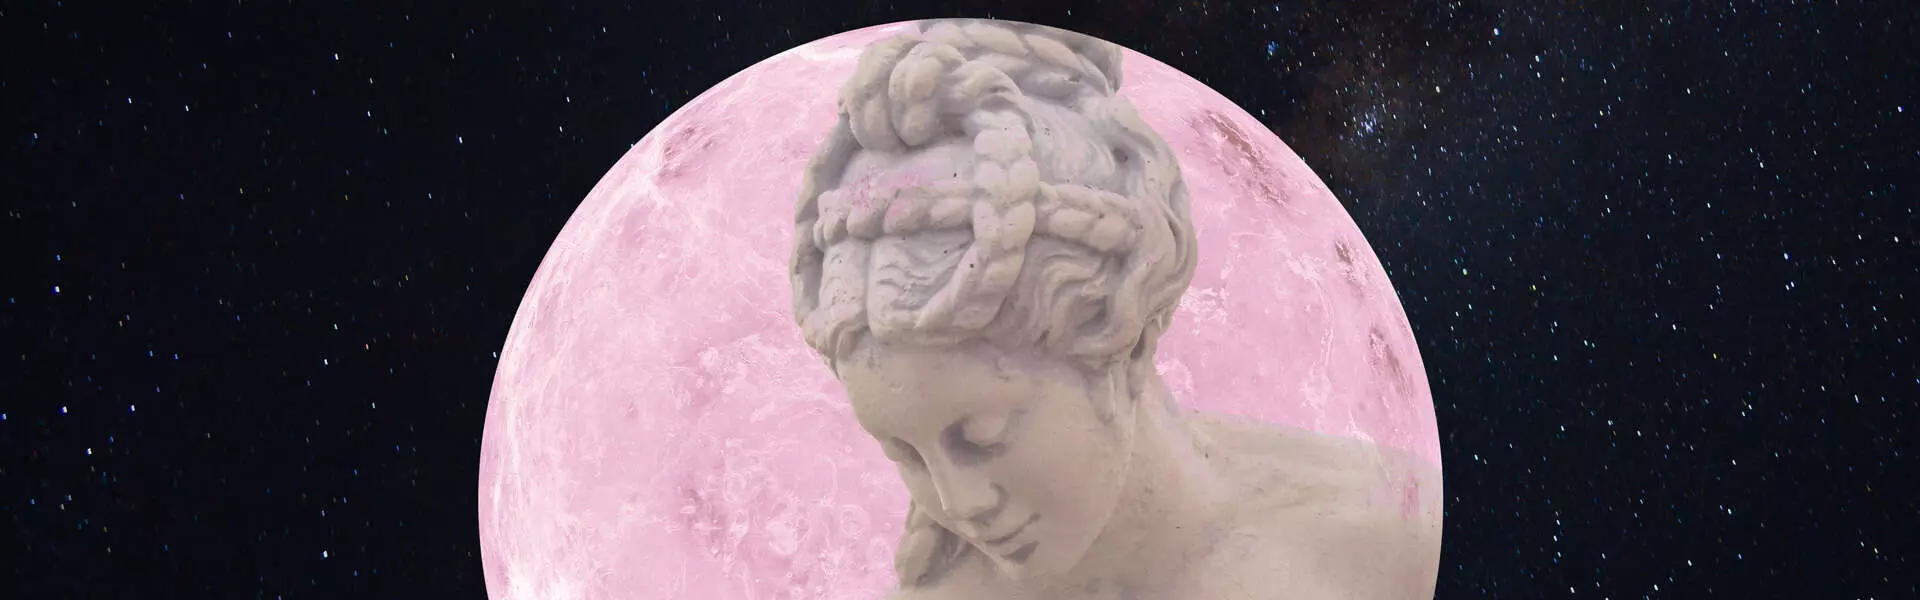 Venus katika Astrology - Sayari ya Upendo na Harmony.